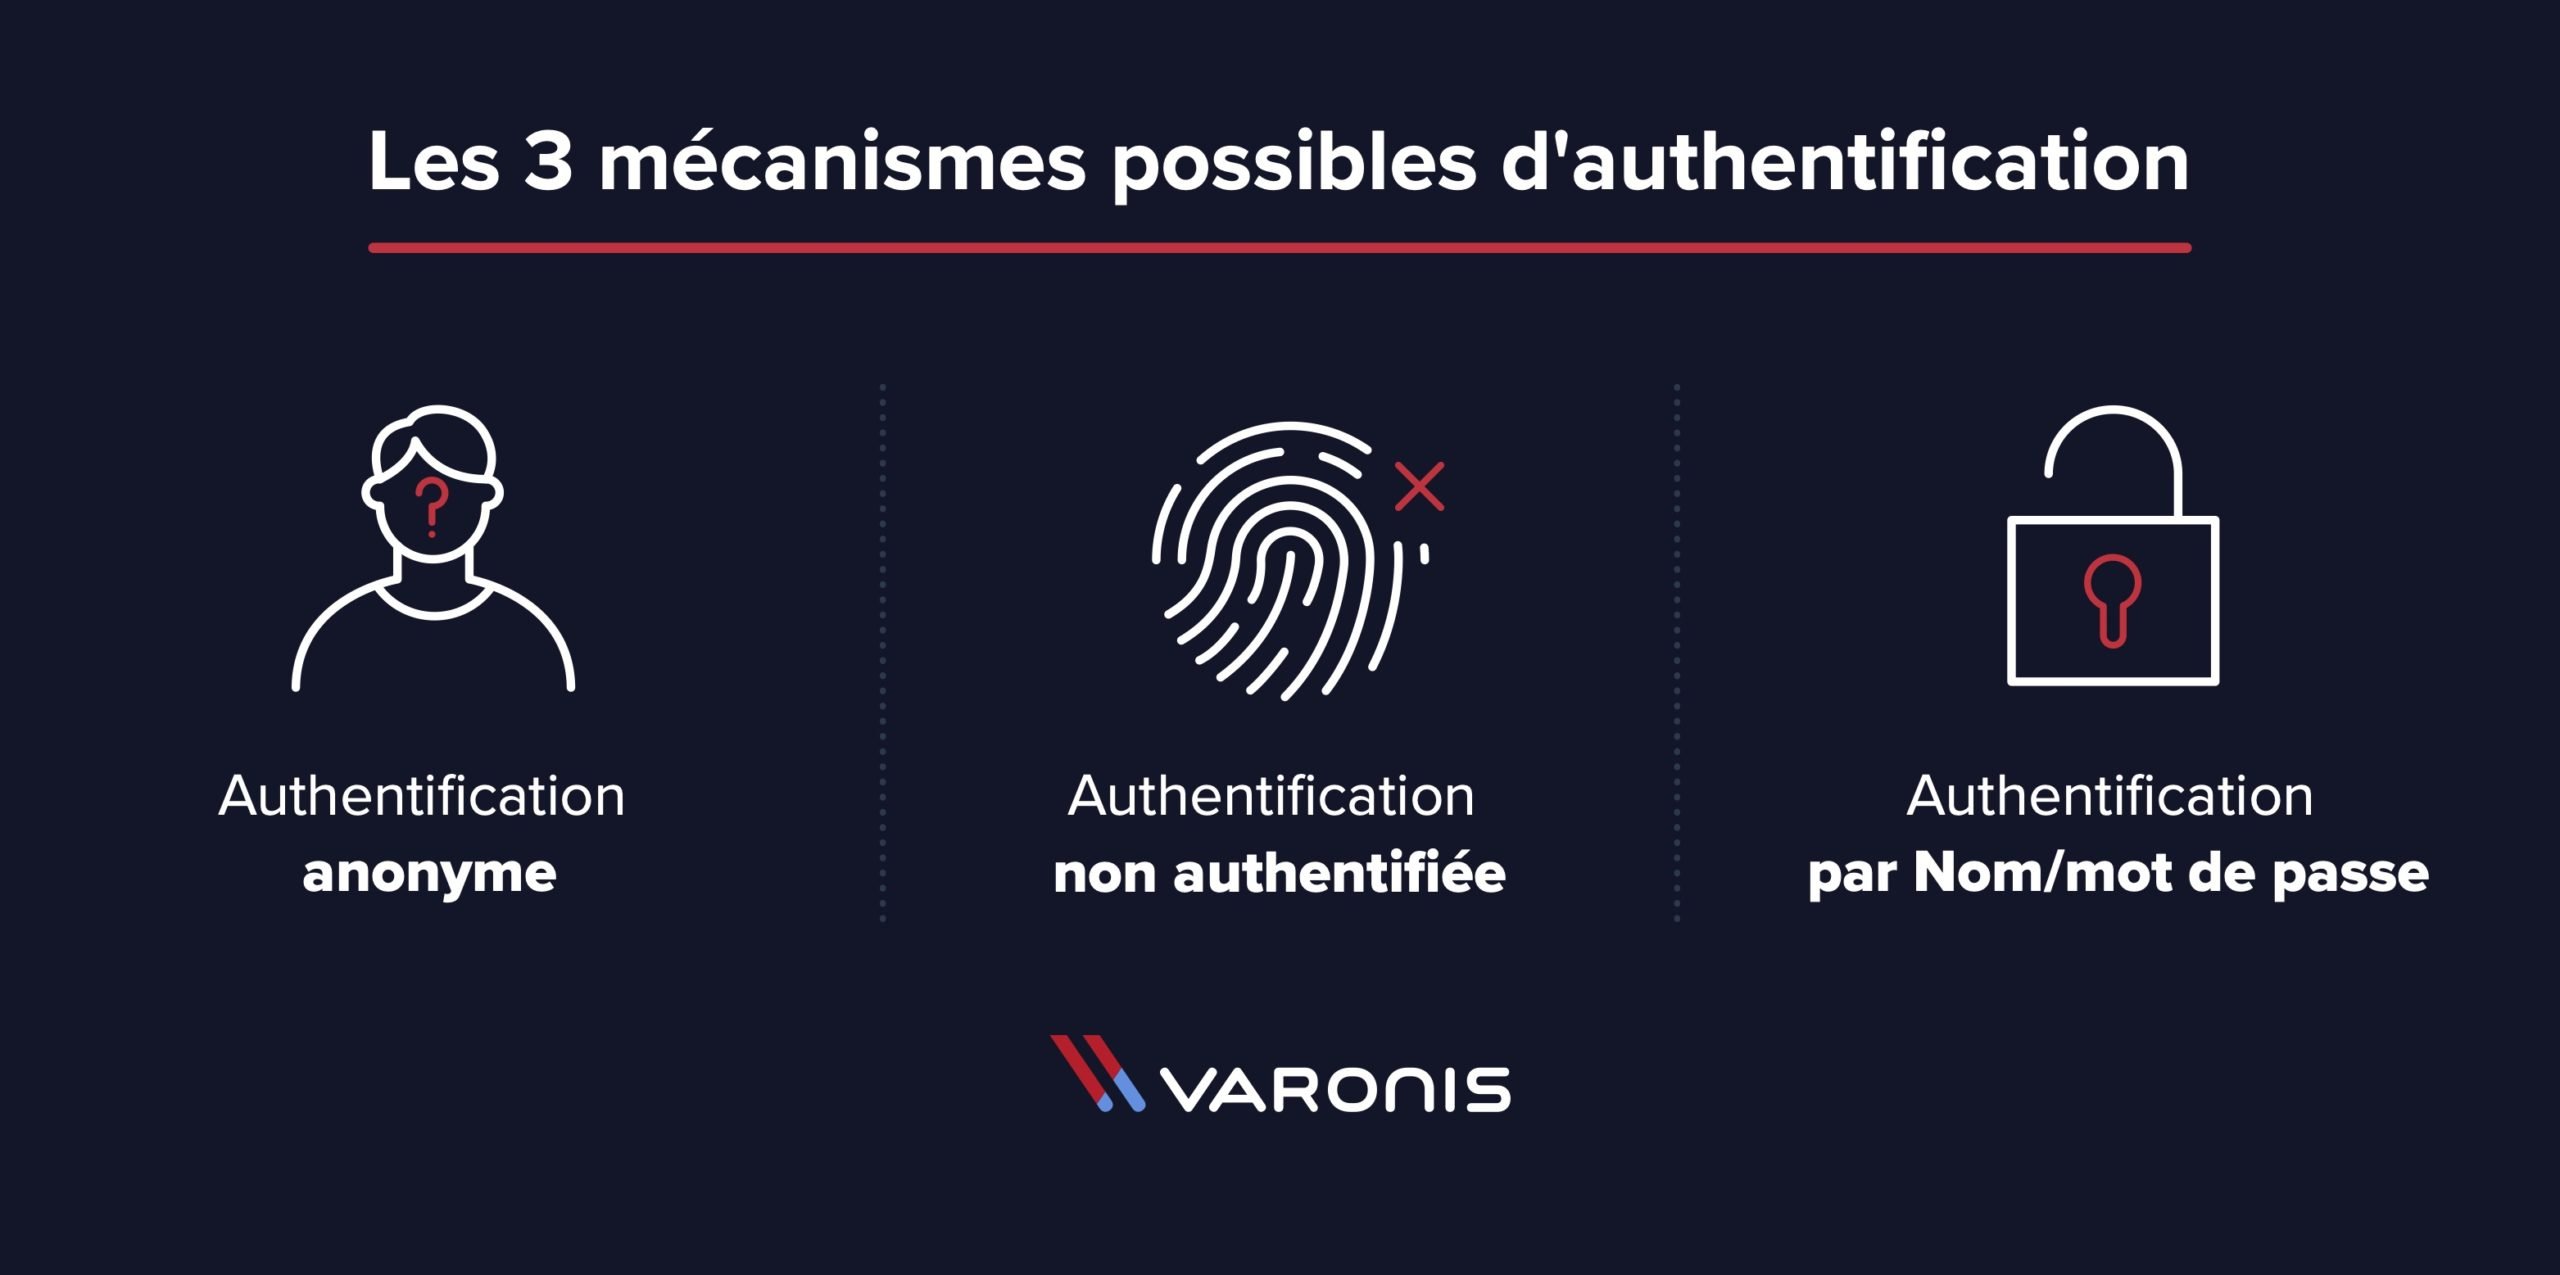 Les 3 mécanismes possibles d'authentification Authentification anonyme Authentification non authentifiée Authentification par Nom/mot de passe